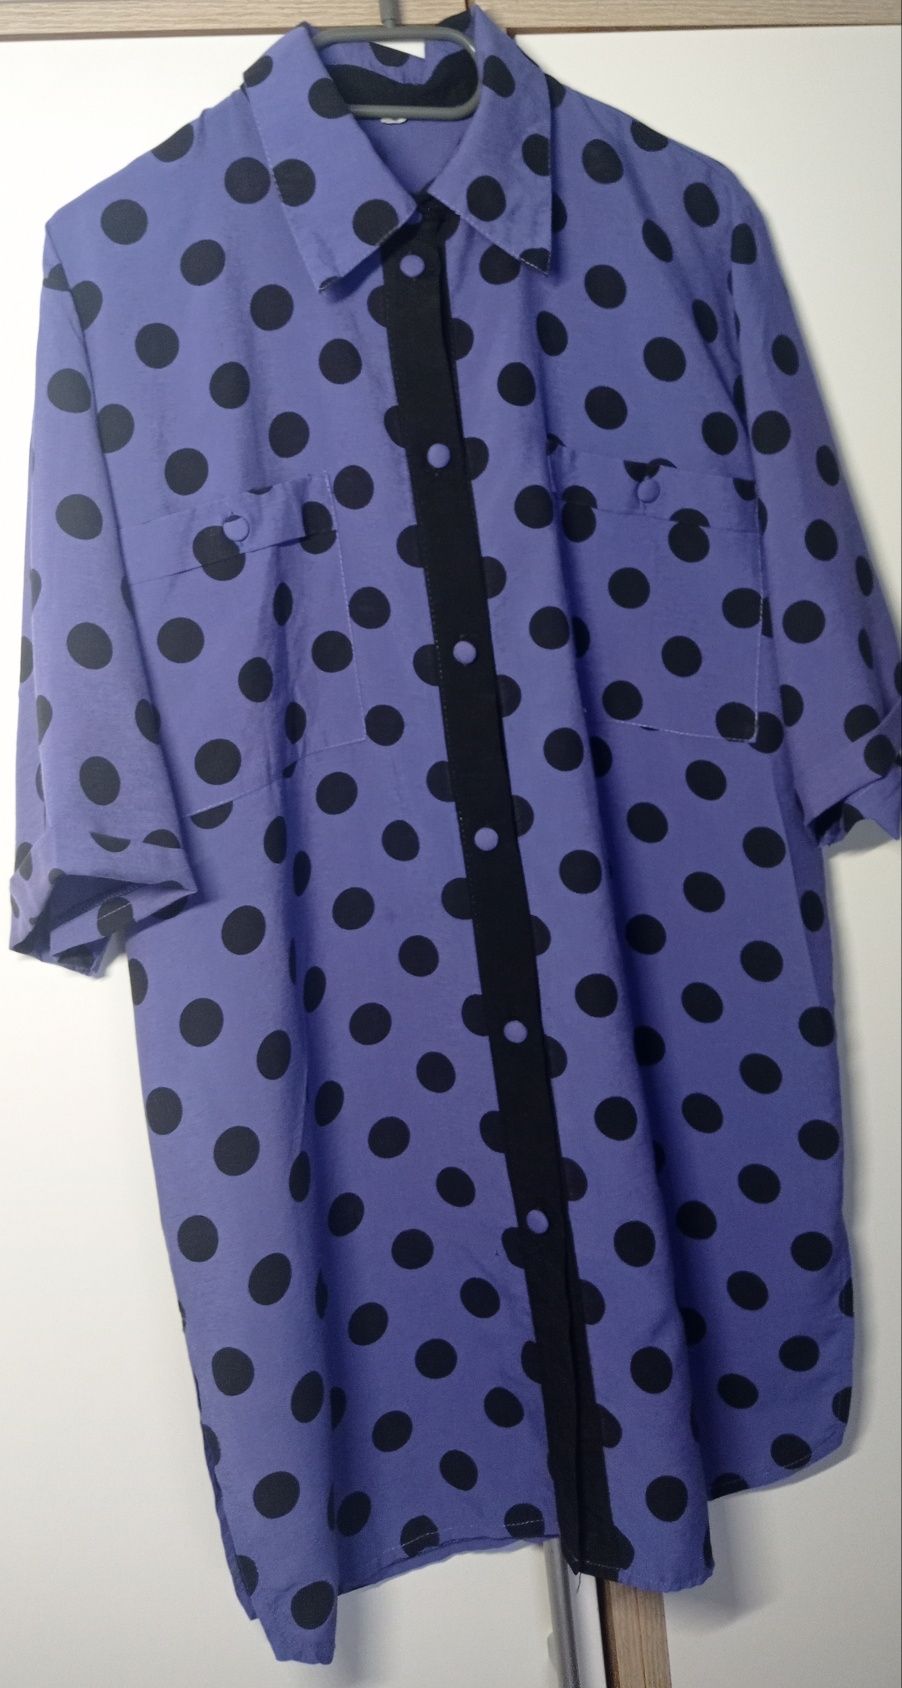 Wyjątkowa koszula bluzka damska vintage oversize 42 fioletowa w grochy